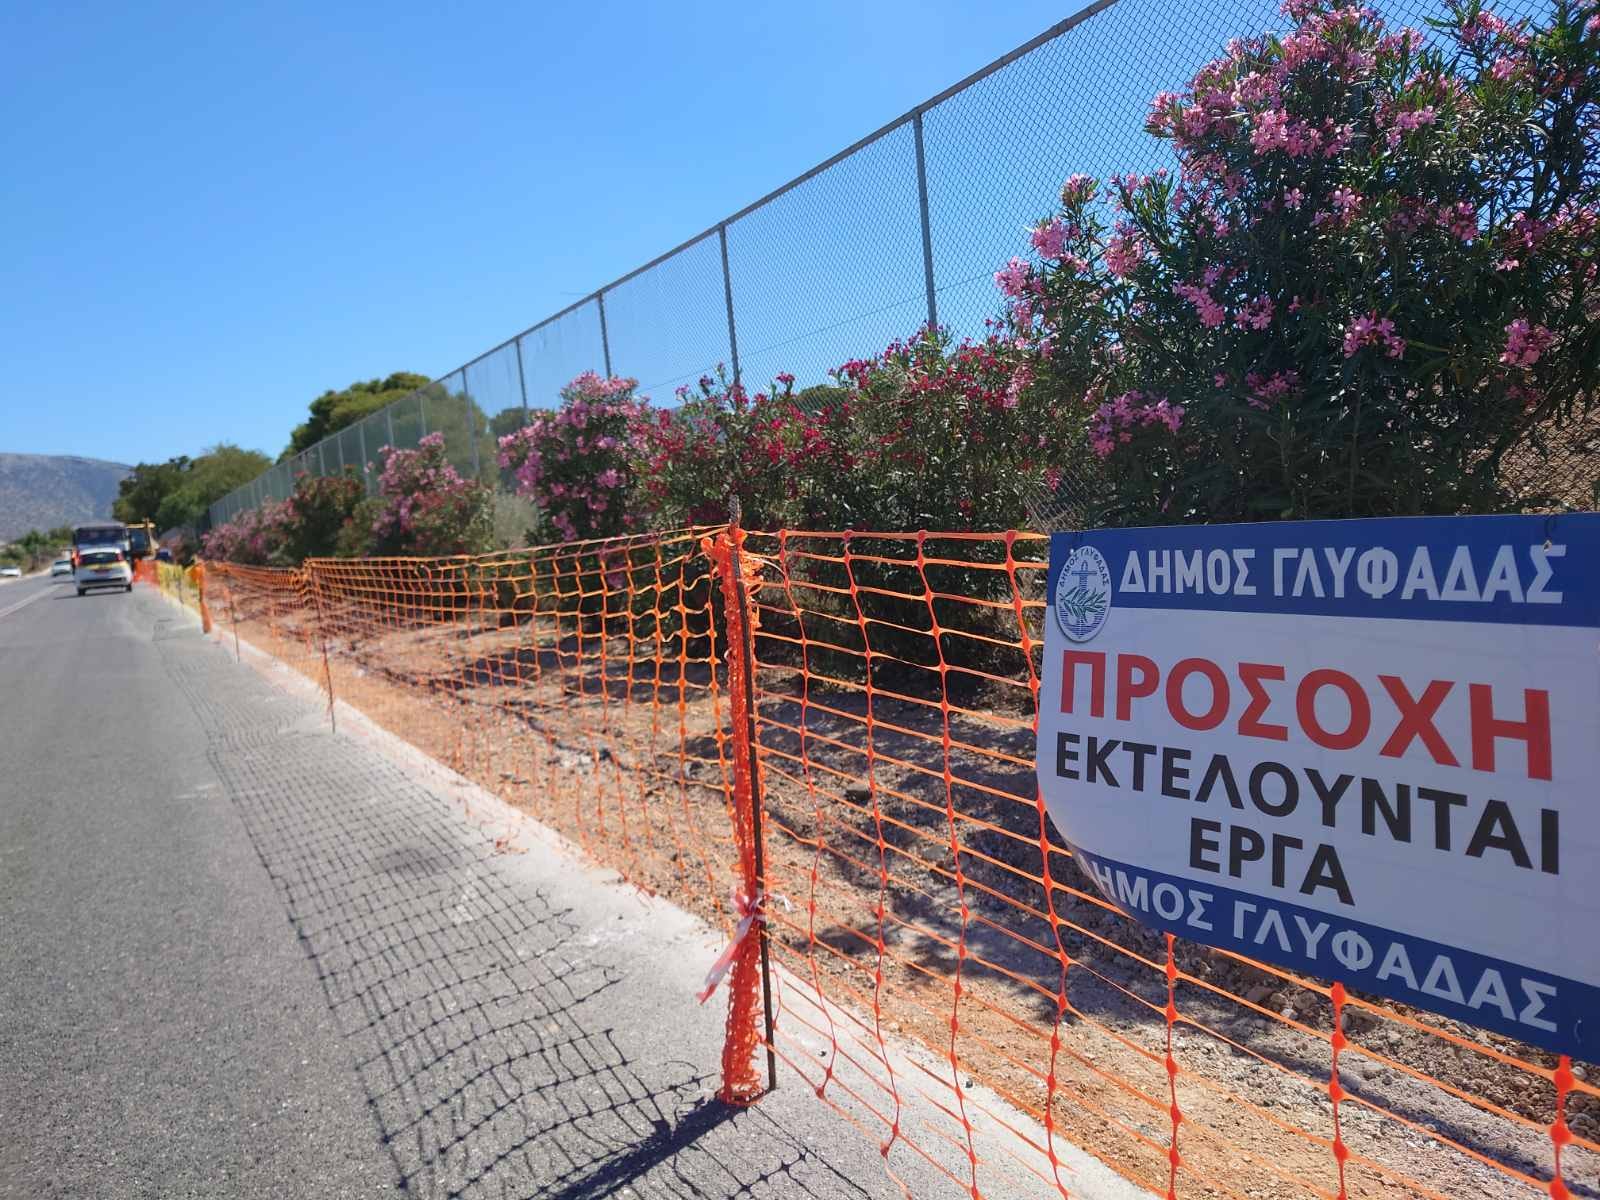 Δήμος Γλυφάδας: Νέος πεζόδρομος περιμετρικά του γκόλφ